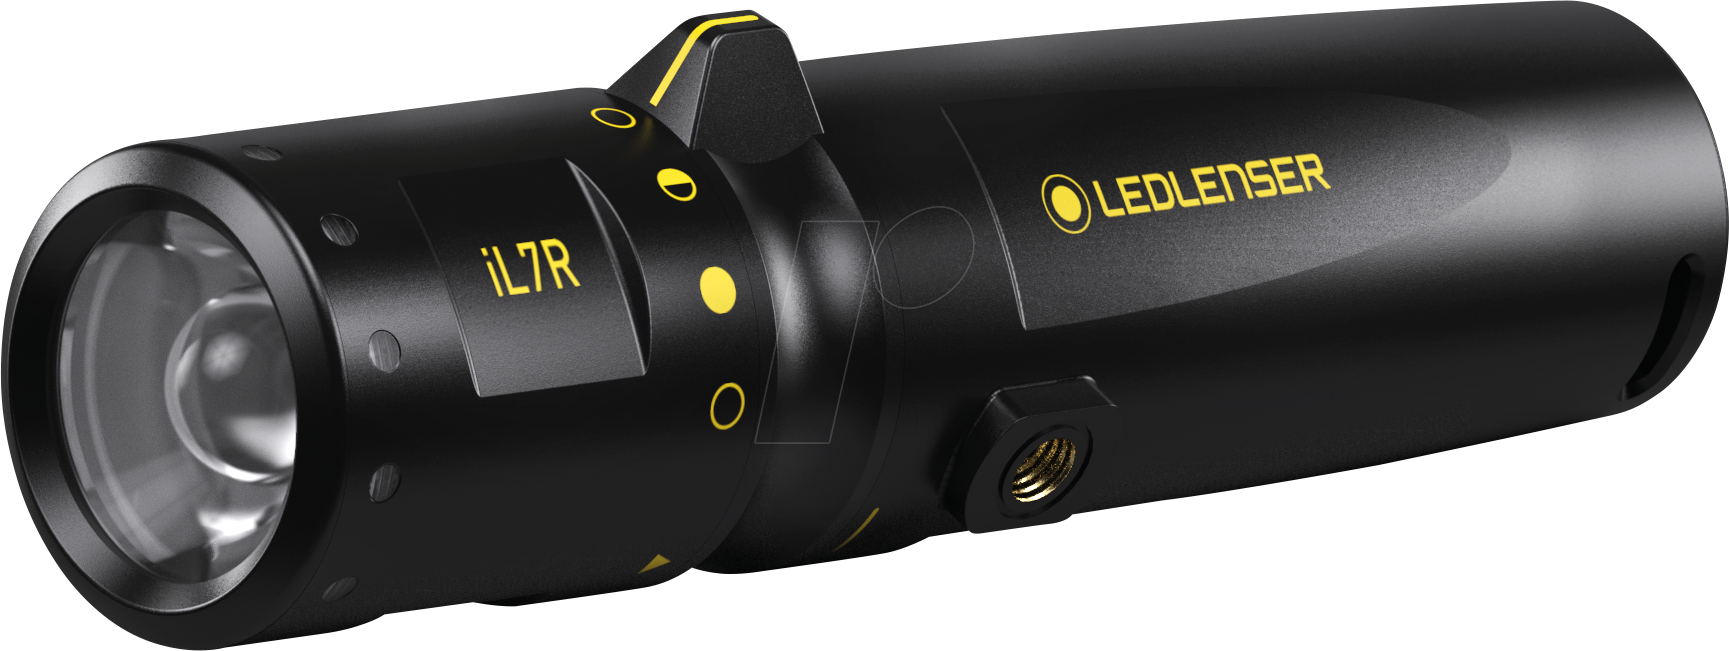 LEDLENSER 501052 - LED-Taschenlampe, iL7R, 360 lm von LEDLENSER